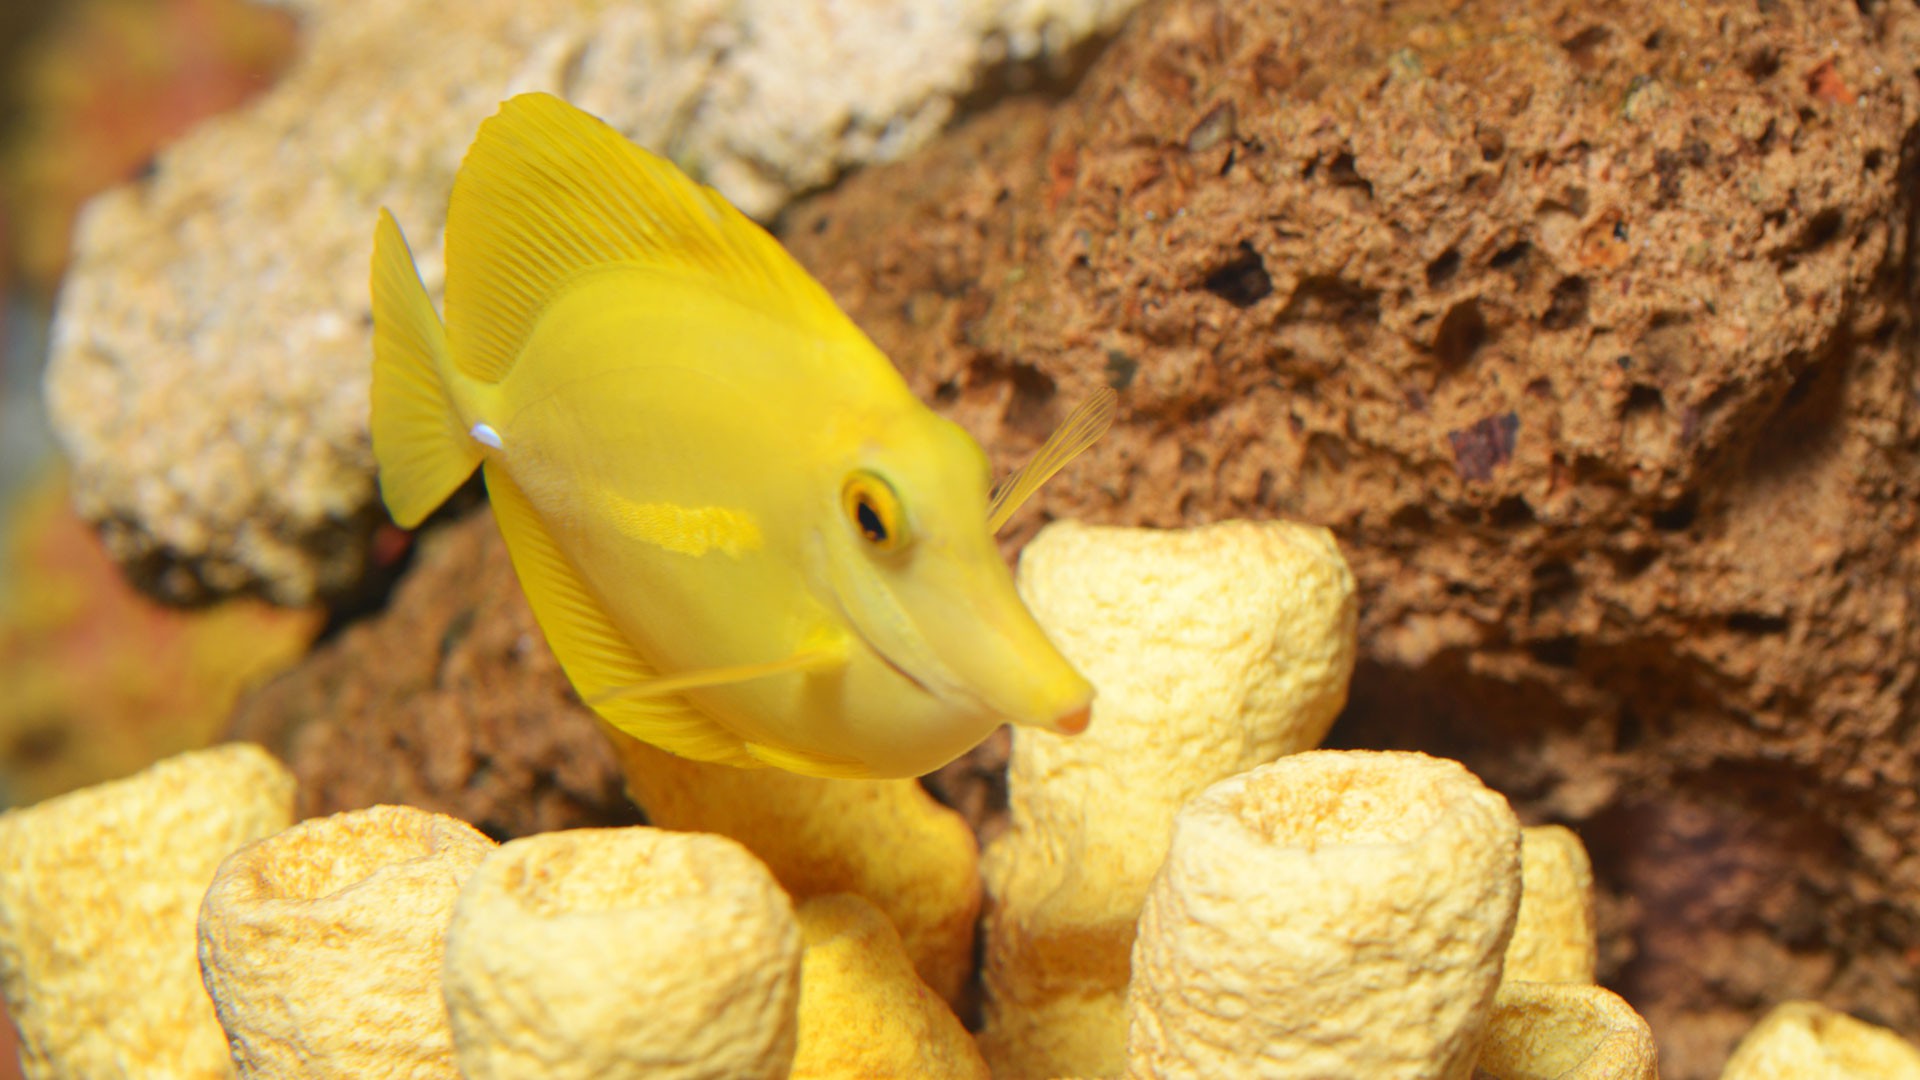 Yellow Surgeonfish